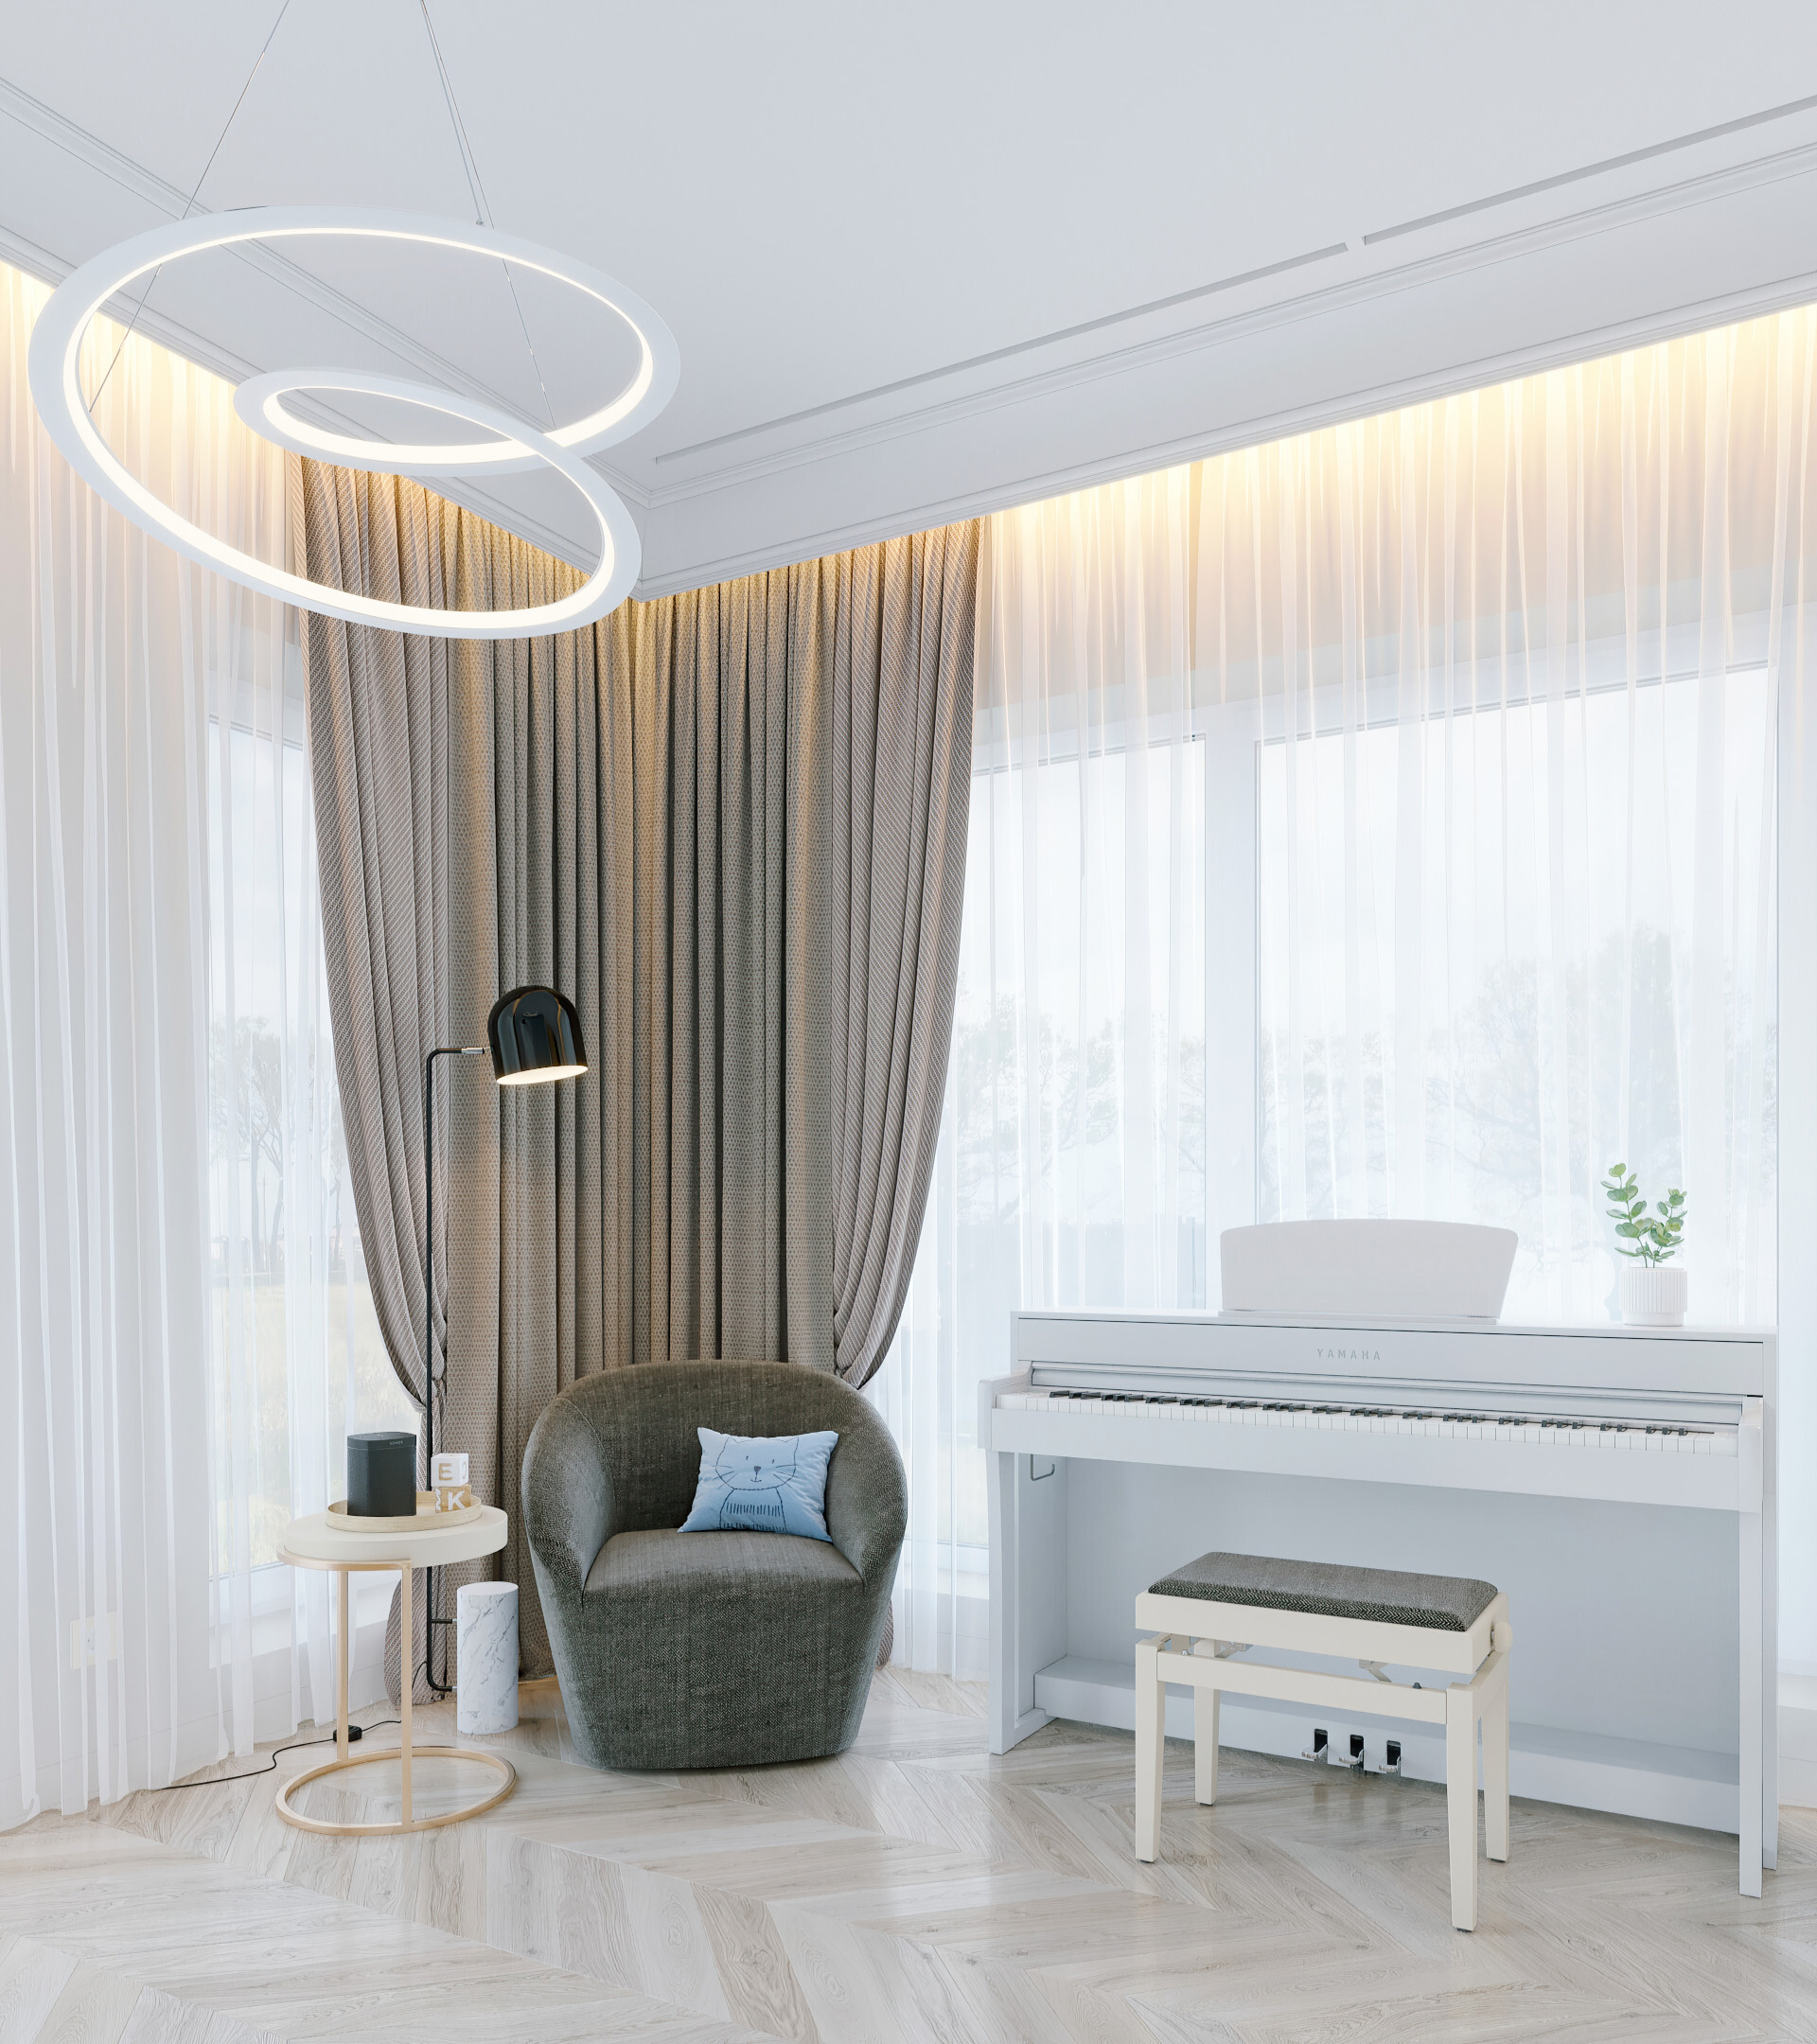 Интерьер гостиной cветовыми линиями, рейками с подсветкой и подсветкой светодиодной в классическом стиле